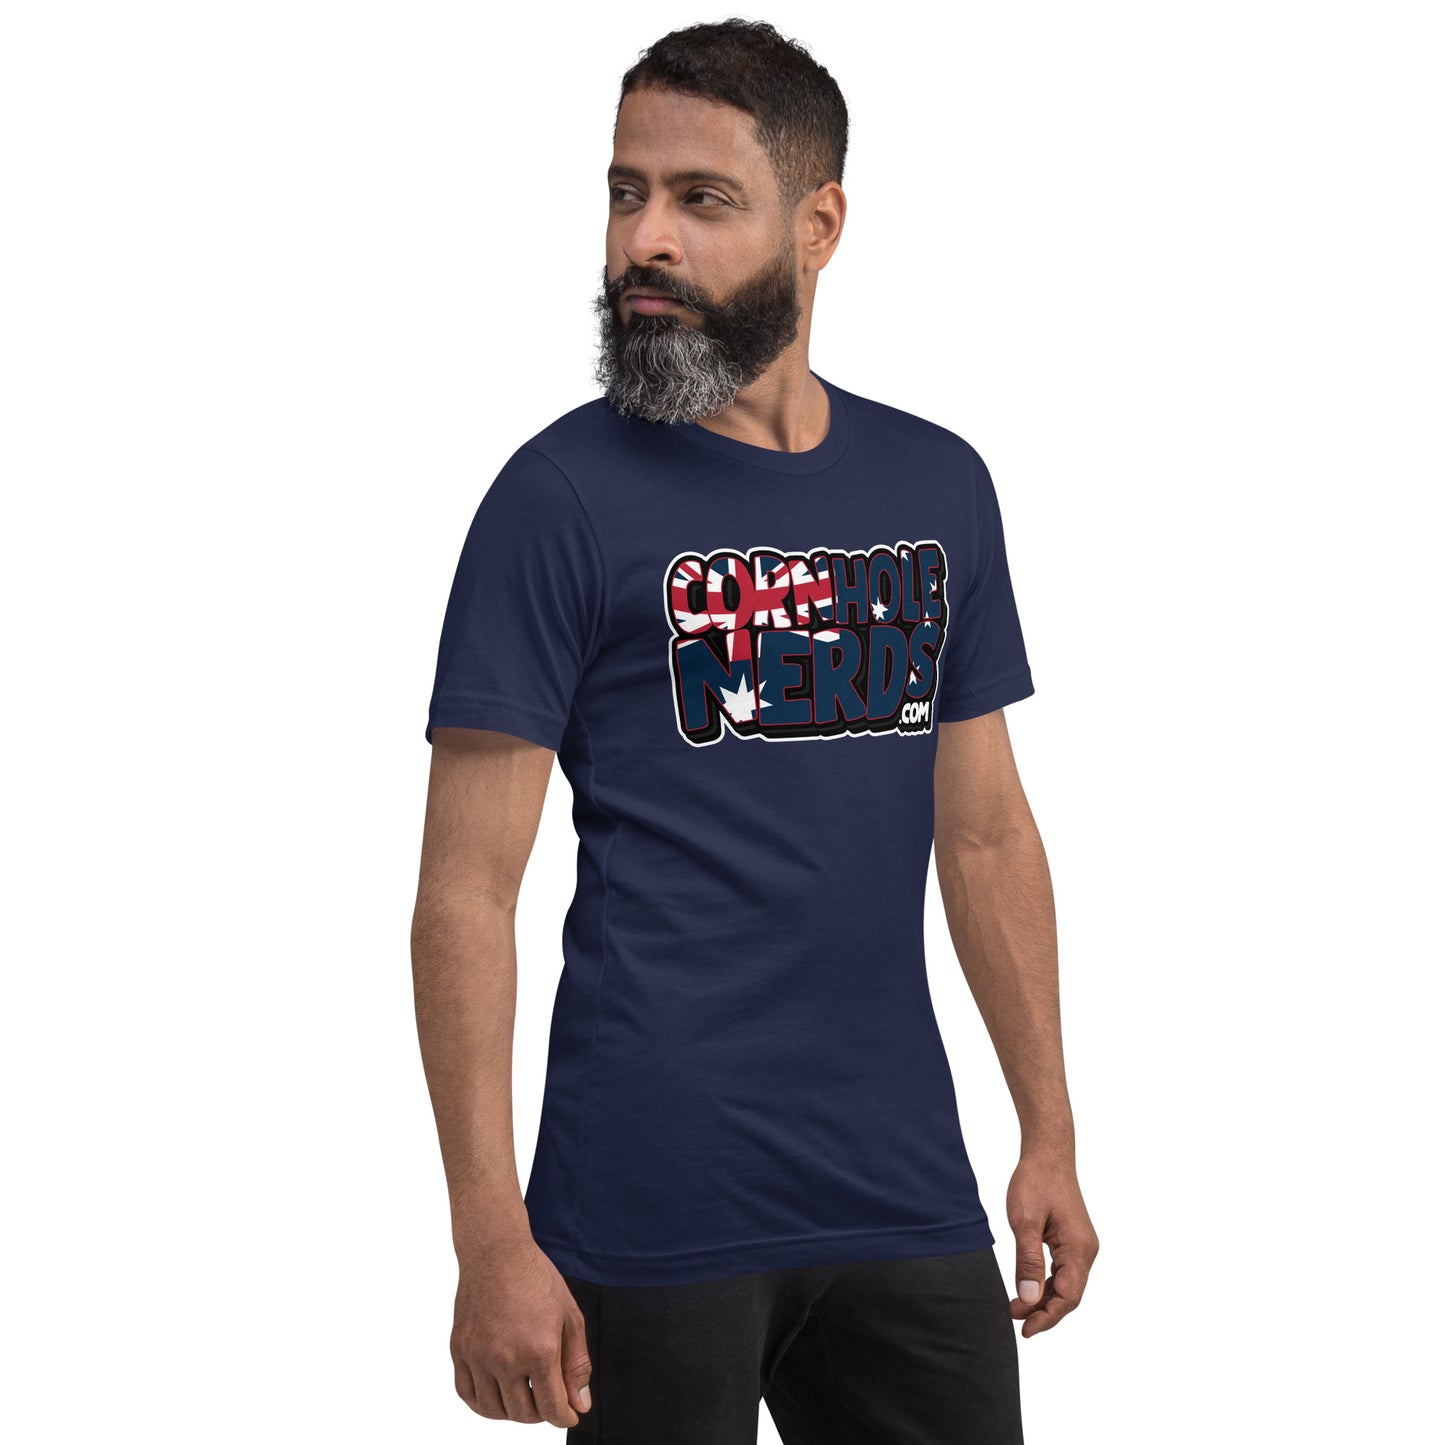 Australia Nerds Unisex t-shirt